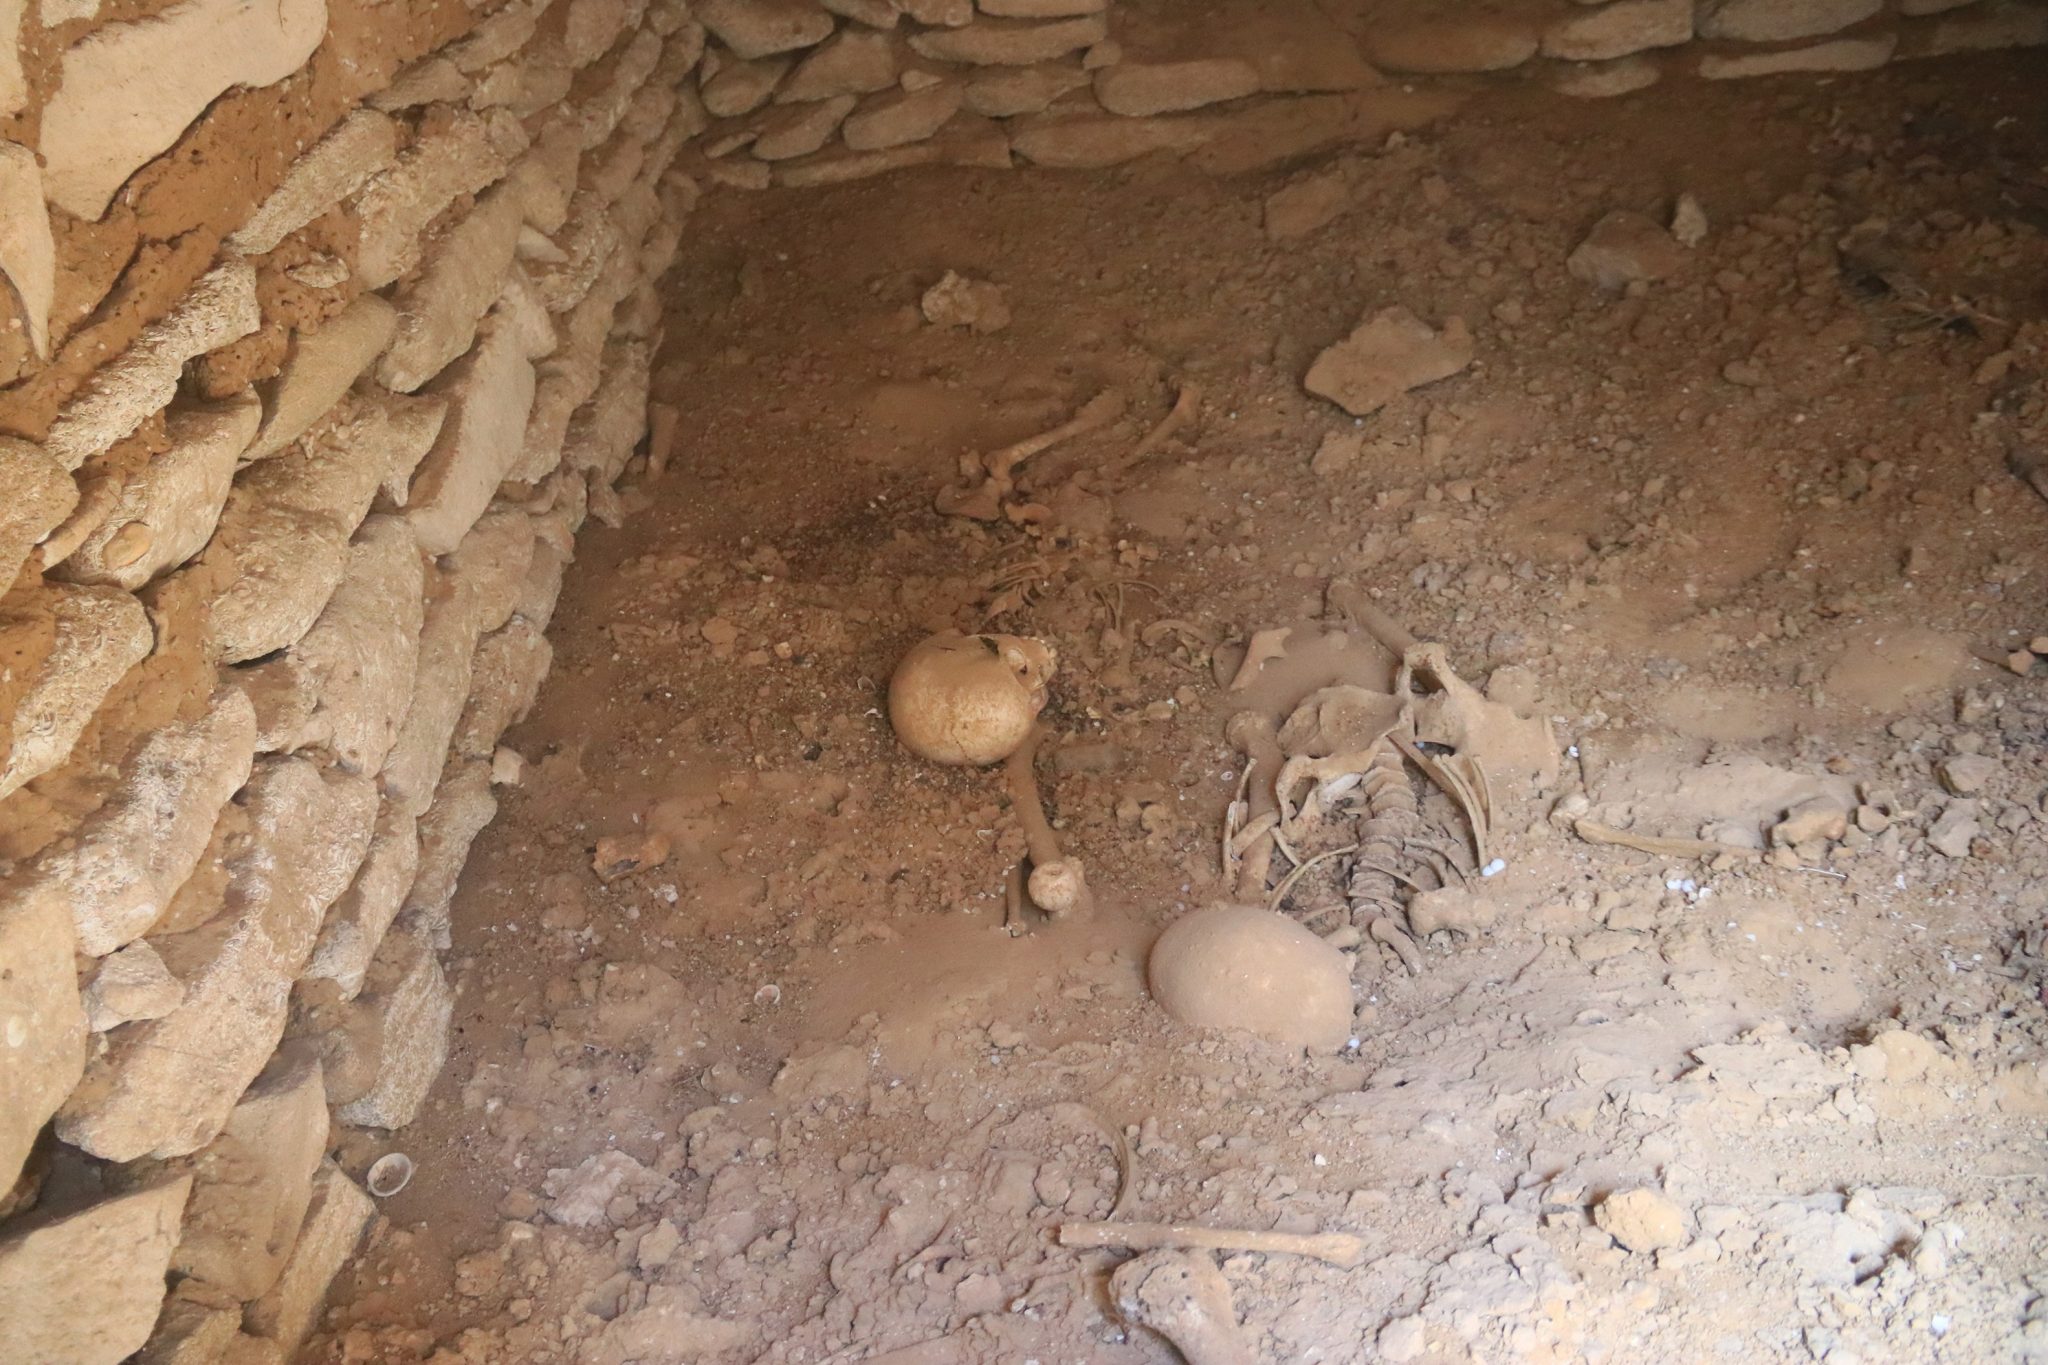   عصابة تجمع «رفات وعظام» الموتى وتلقى بها فى الزبالة لهدم المقابر وإعادة بنائها وبيعها